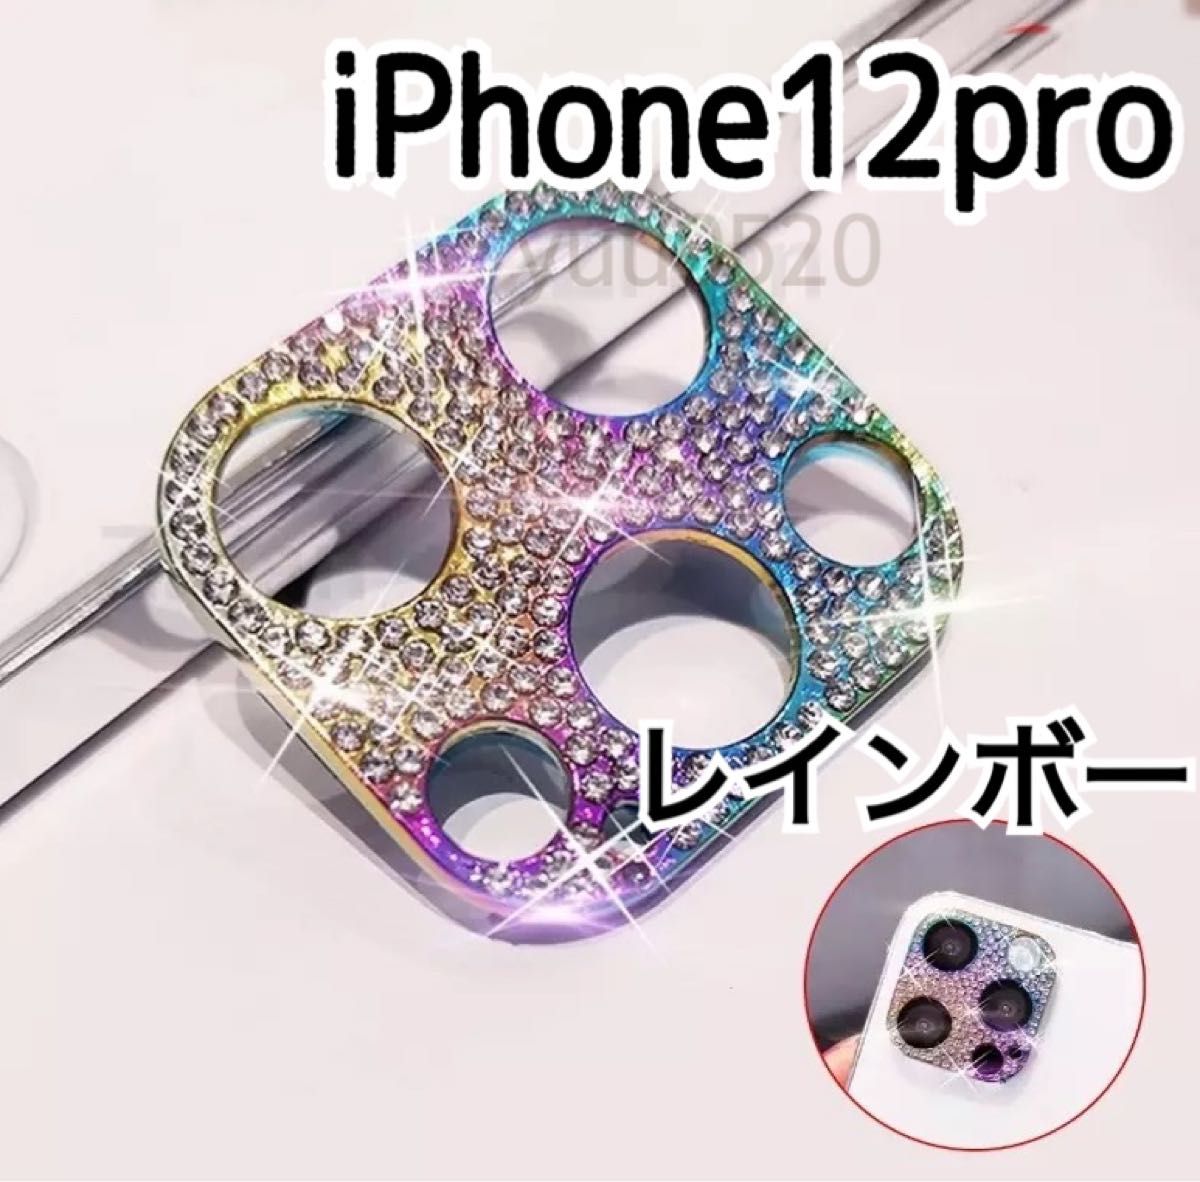 iPhone12pro キラキラ ストーン カメラカバー【レインボー】